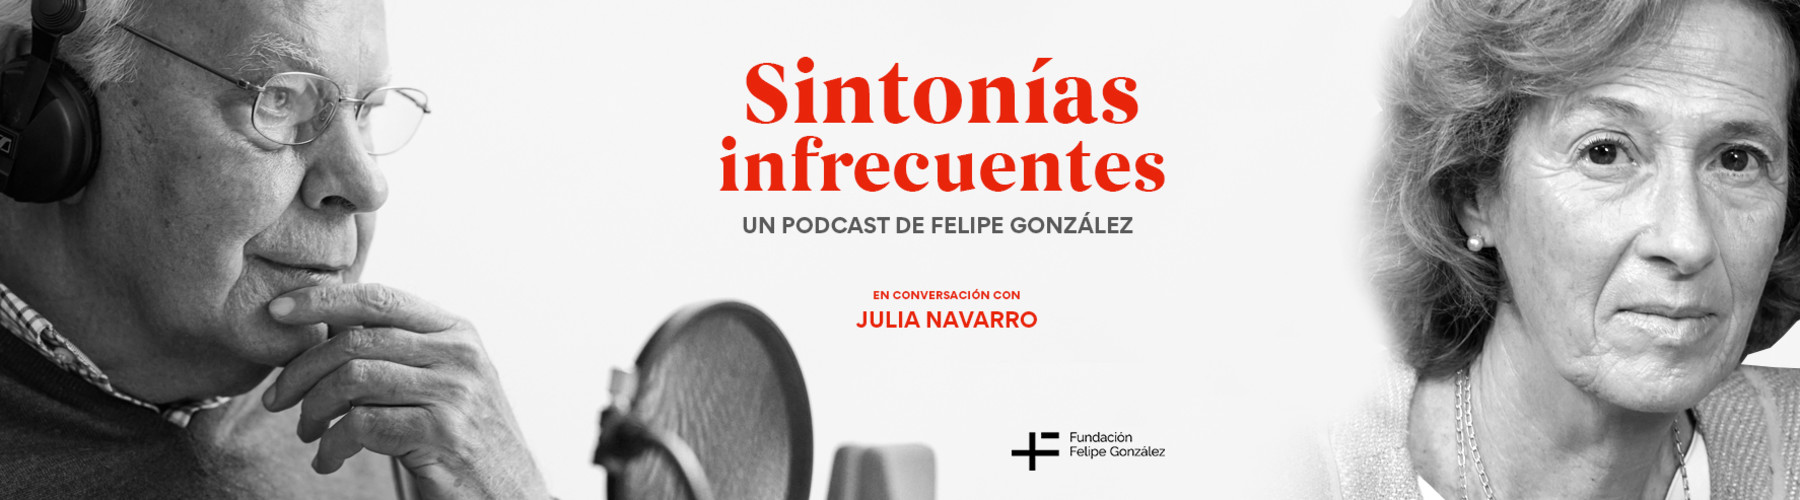 Felipe González y Julia Navarro conversan en el podcast del expresidente español